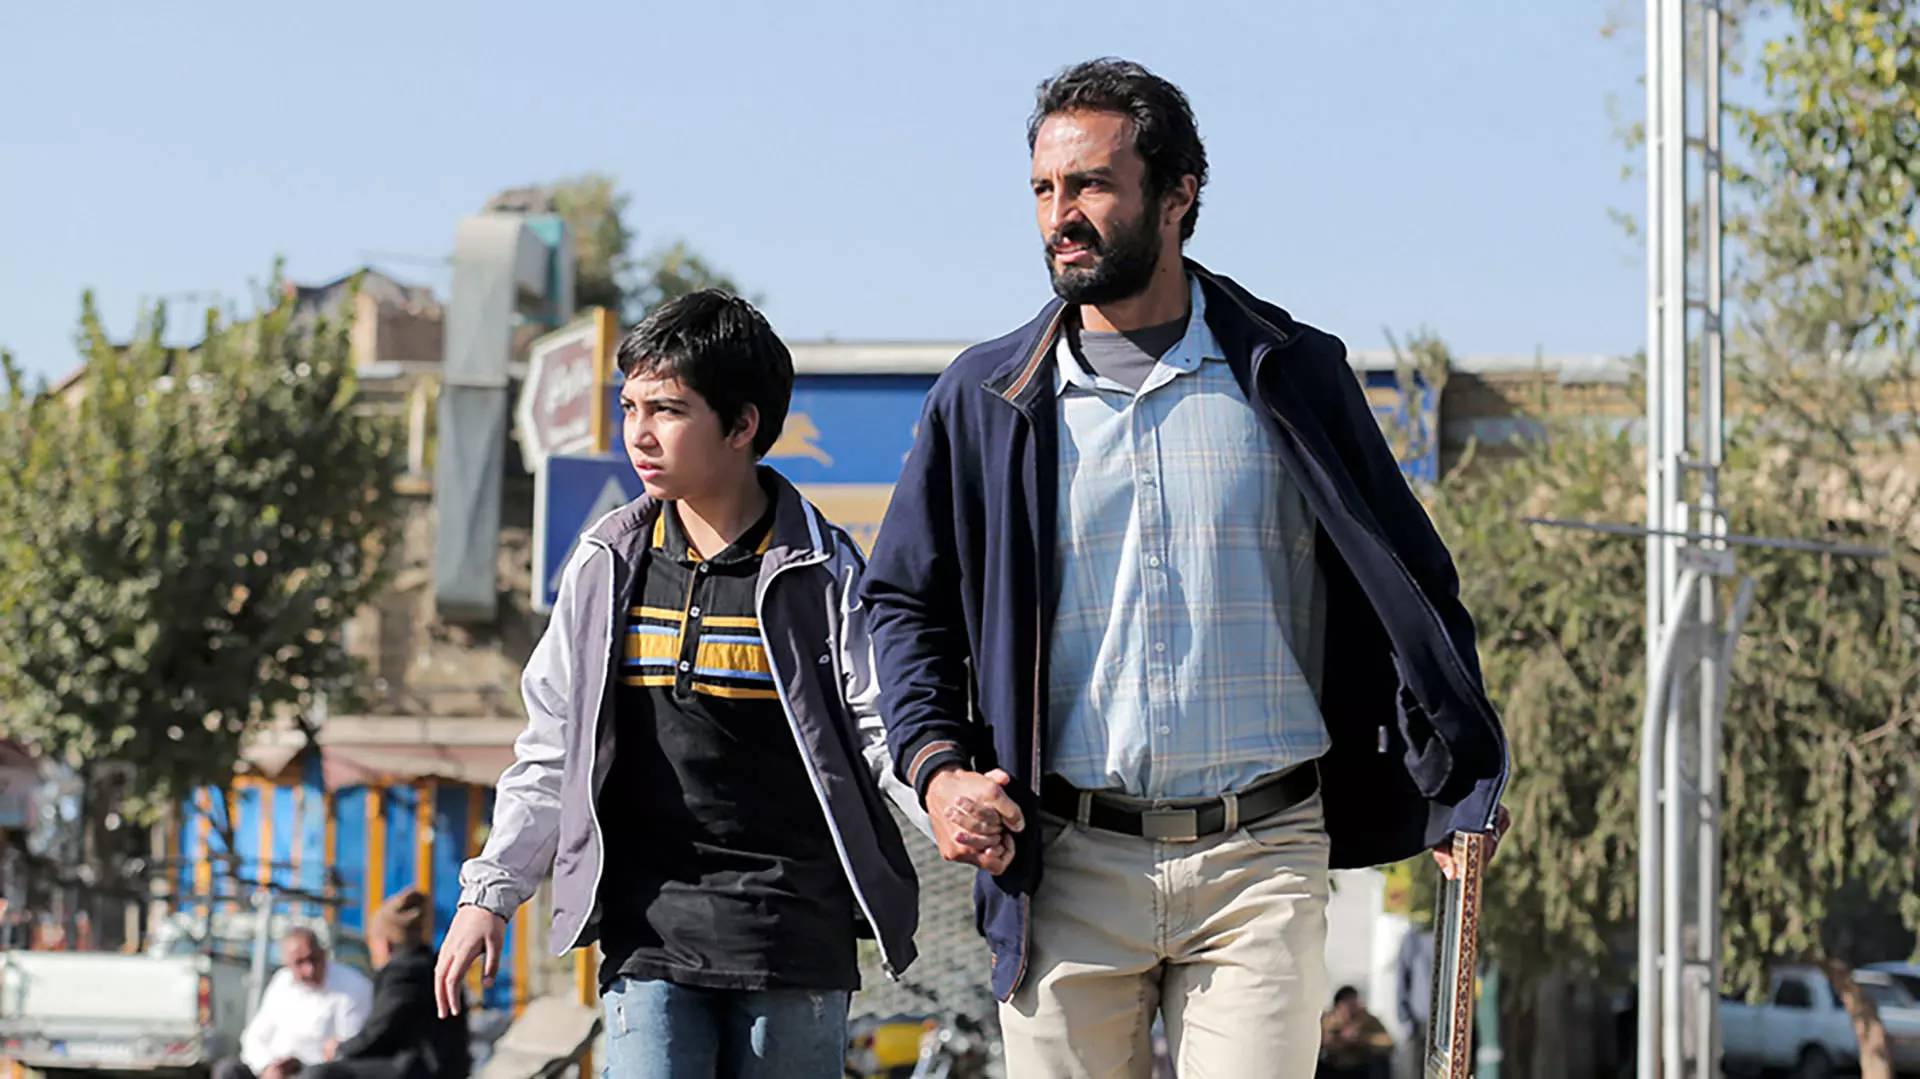 امیر جدیدی دست در دست پسربچه در فیلم قهرمان اصغر فرهادی